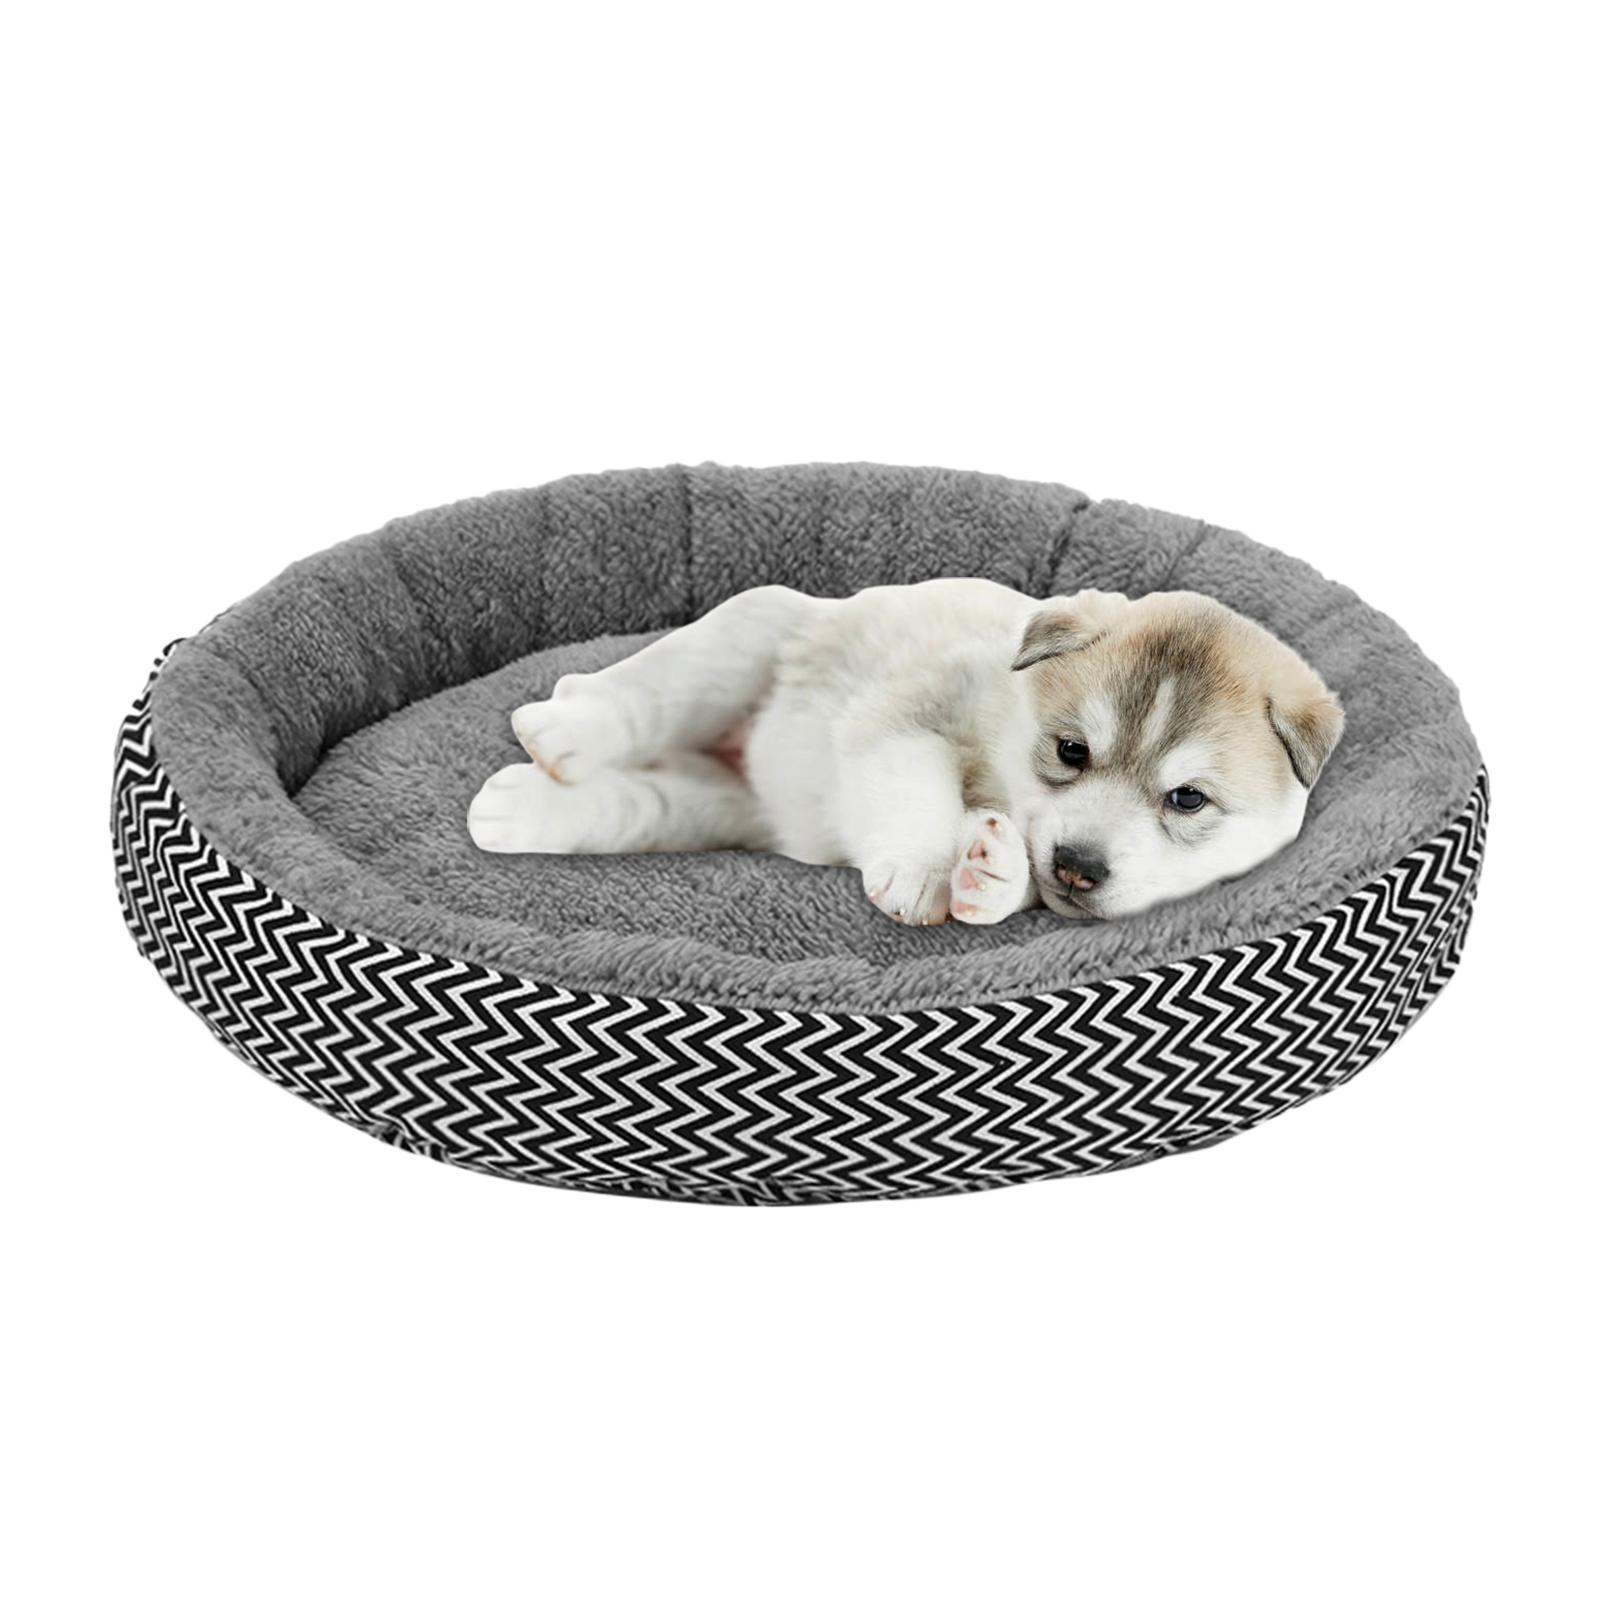 Pet Cat Bed Washable Cushion Pad Fleece House Kennel Basket Pets Supplies Dia. 45cm